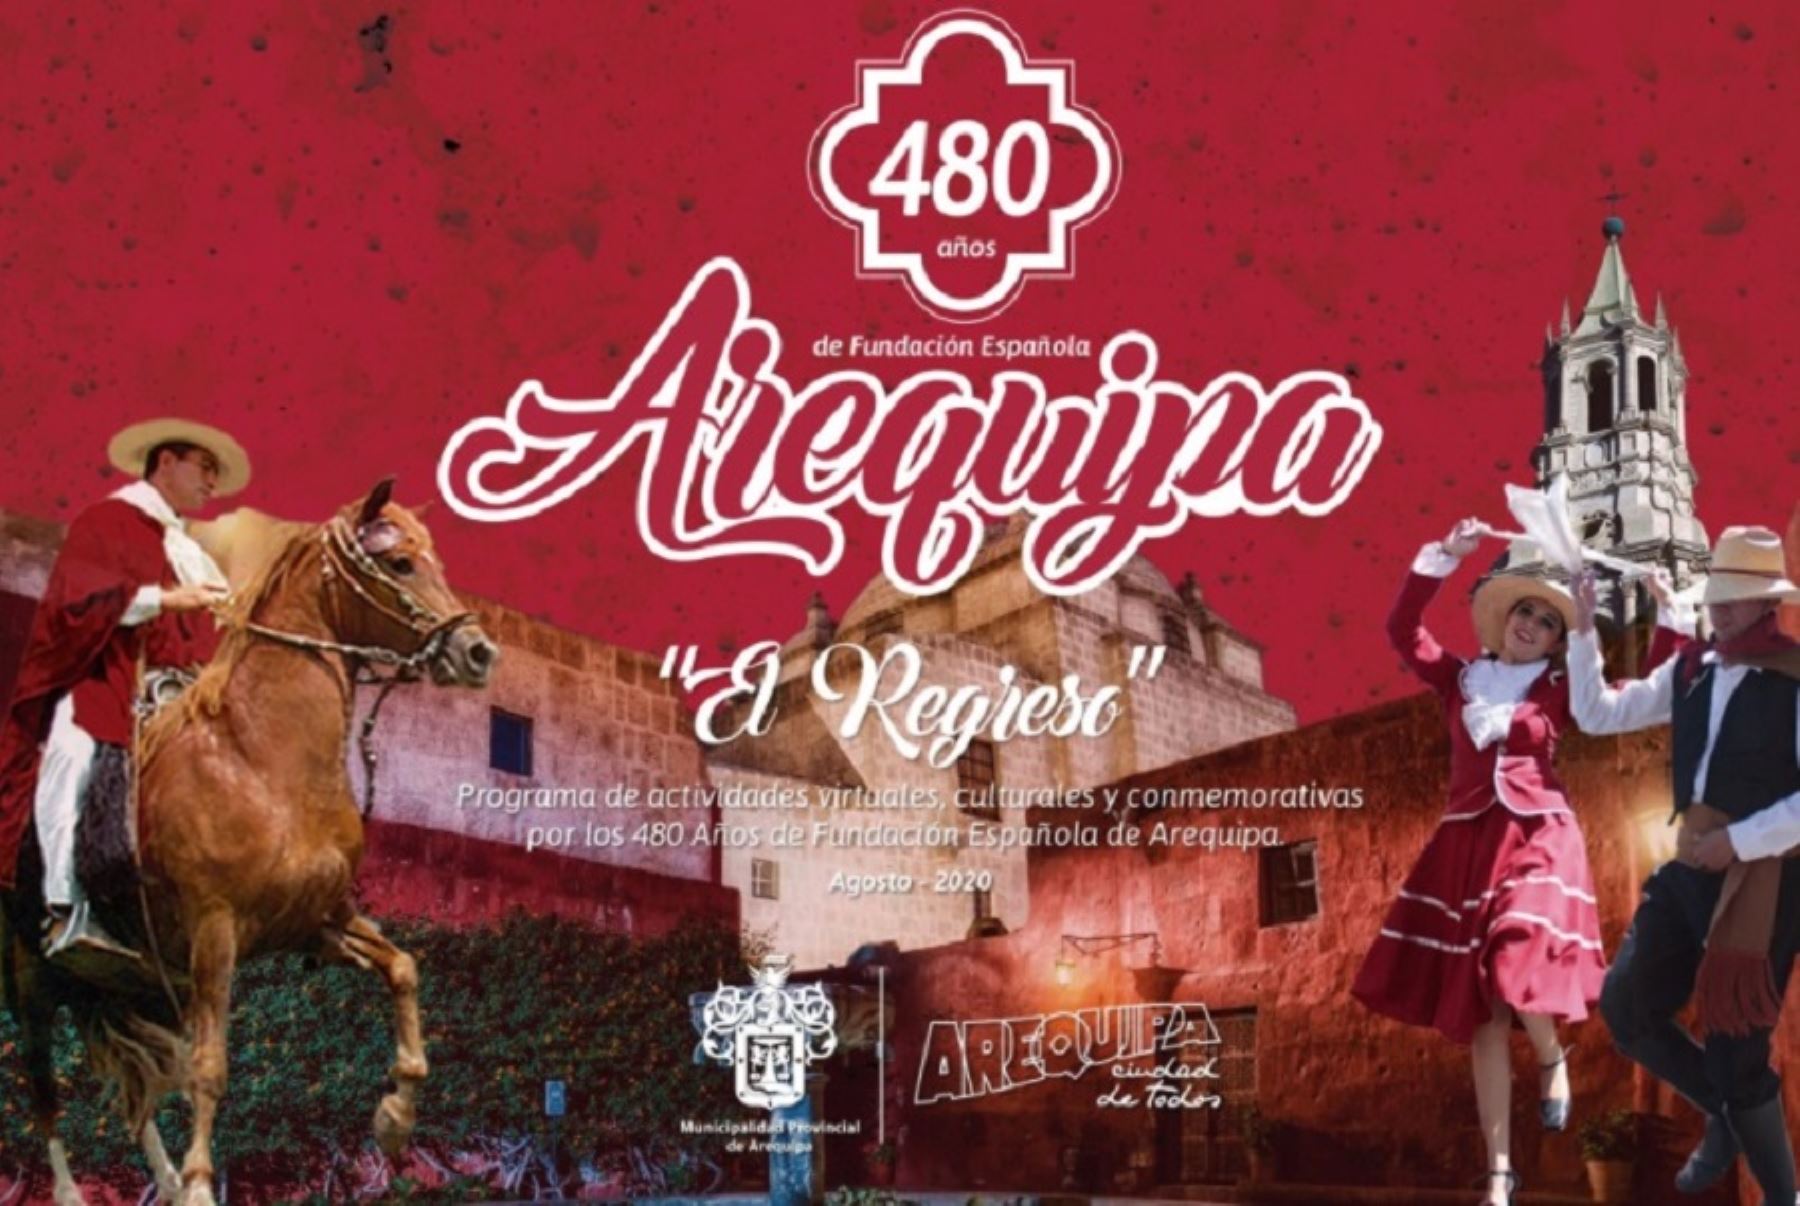 La ciudad de Arequipa celebra 480 años de fundación española. ANDINA/Difusión